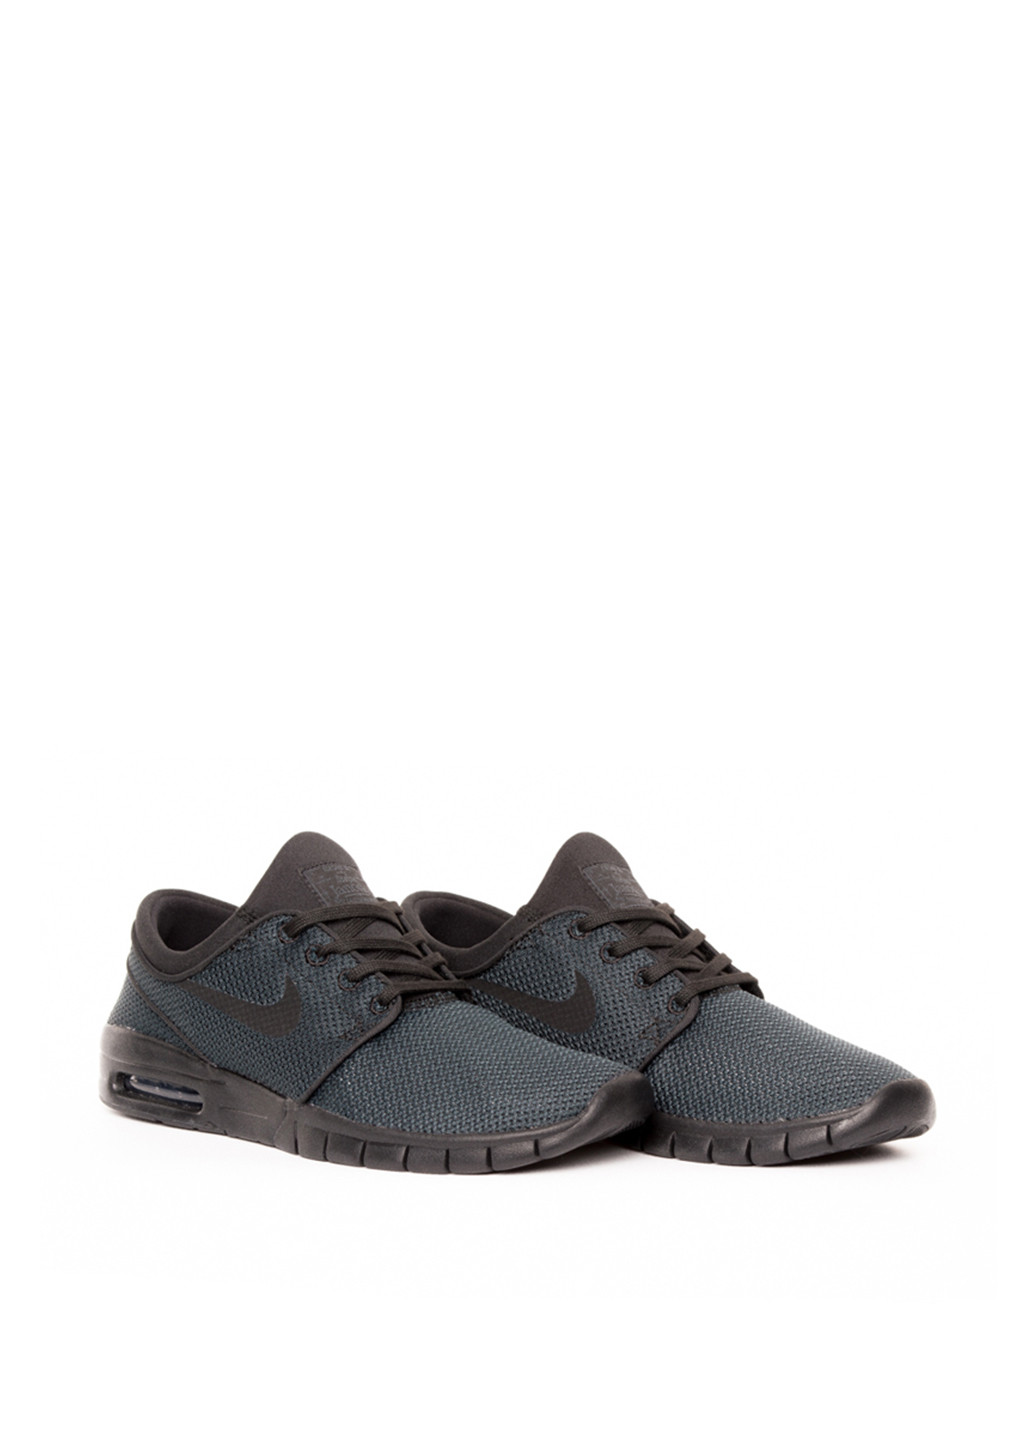 Темно-серые всесезонные кроссовки Nike SB Stefan Janoski Max